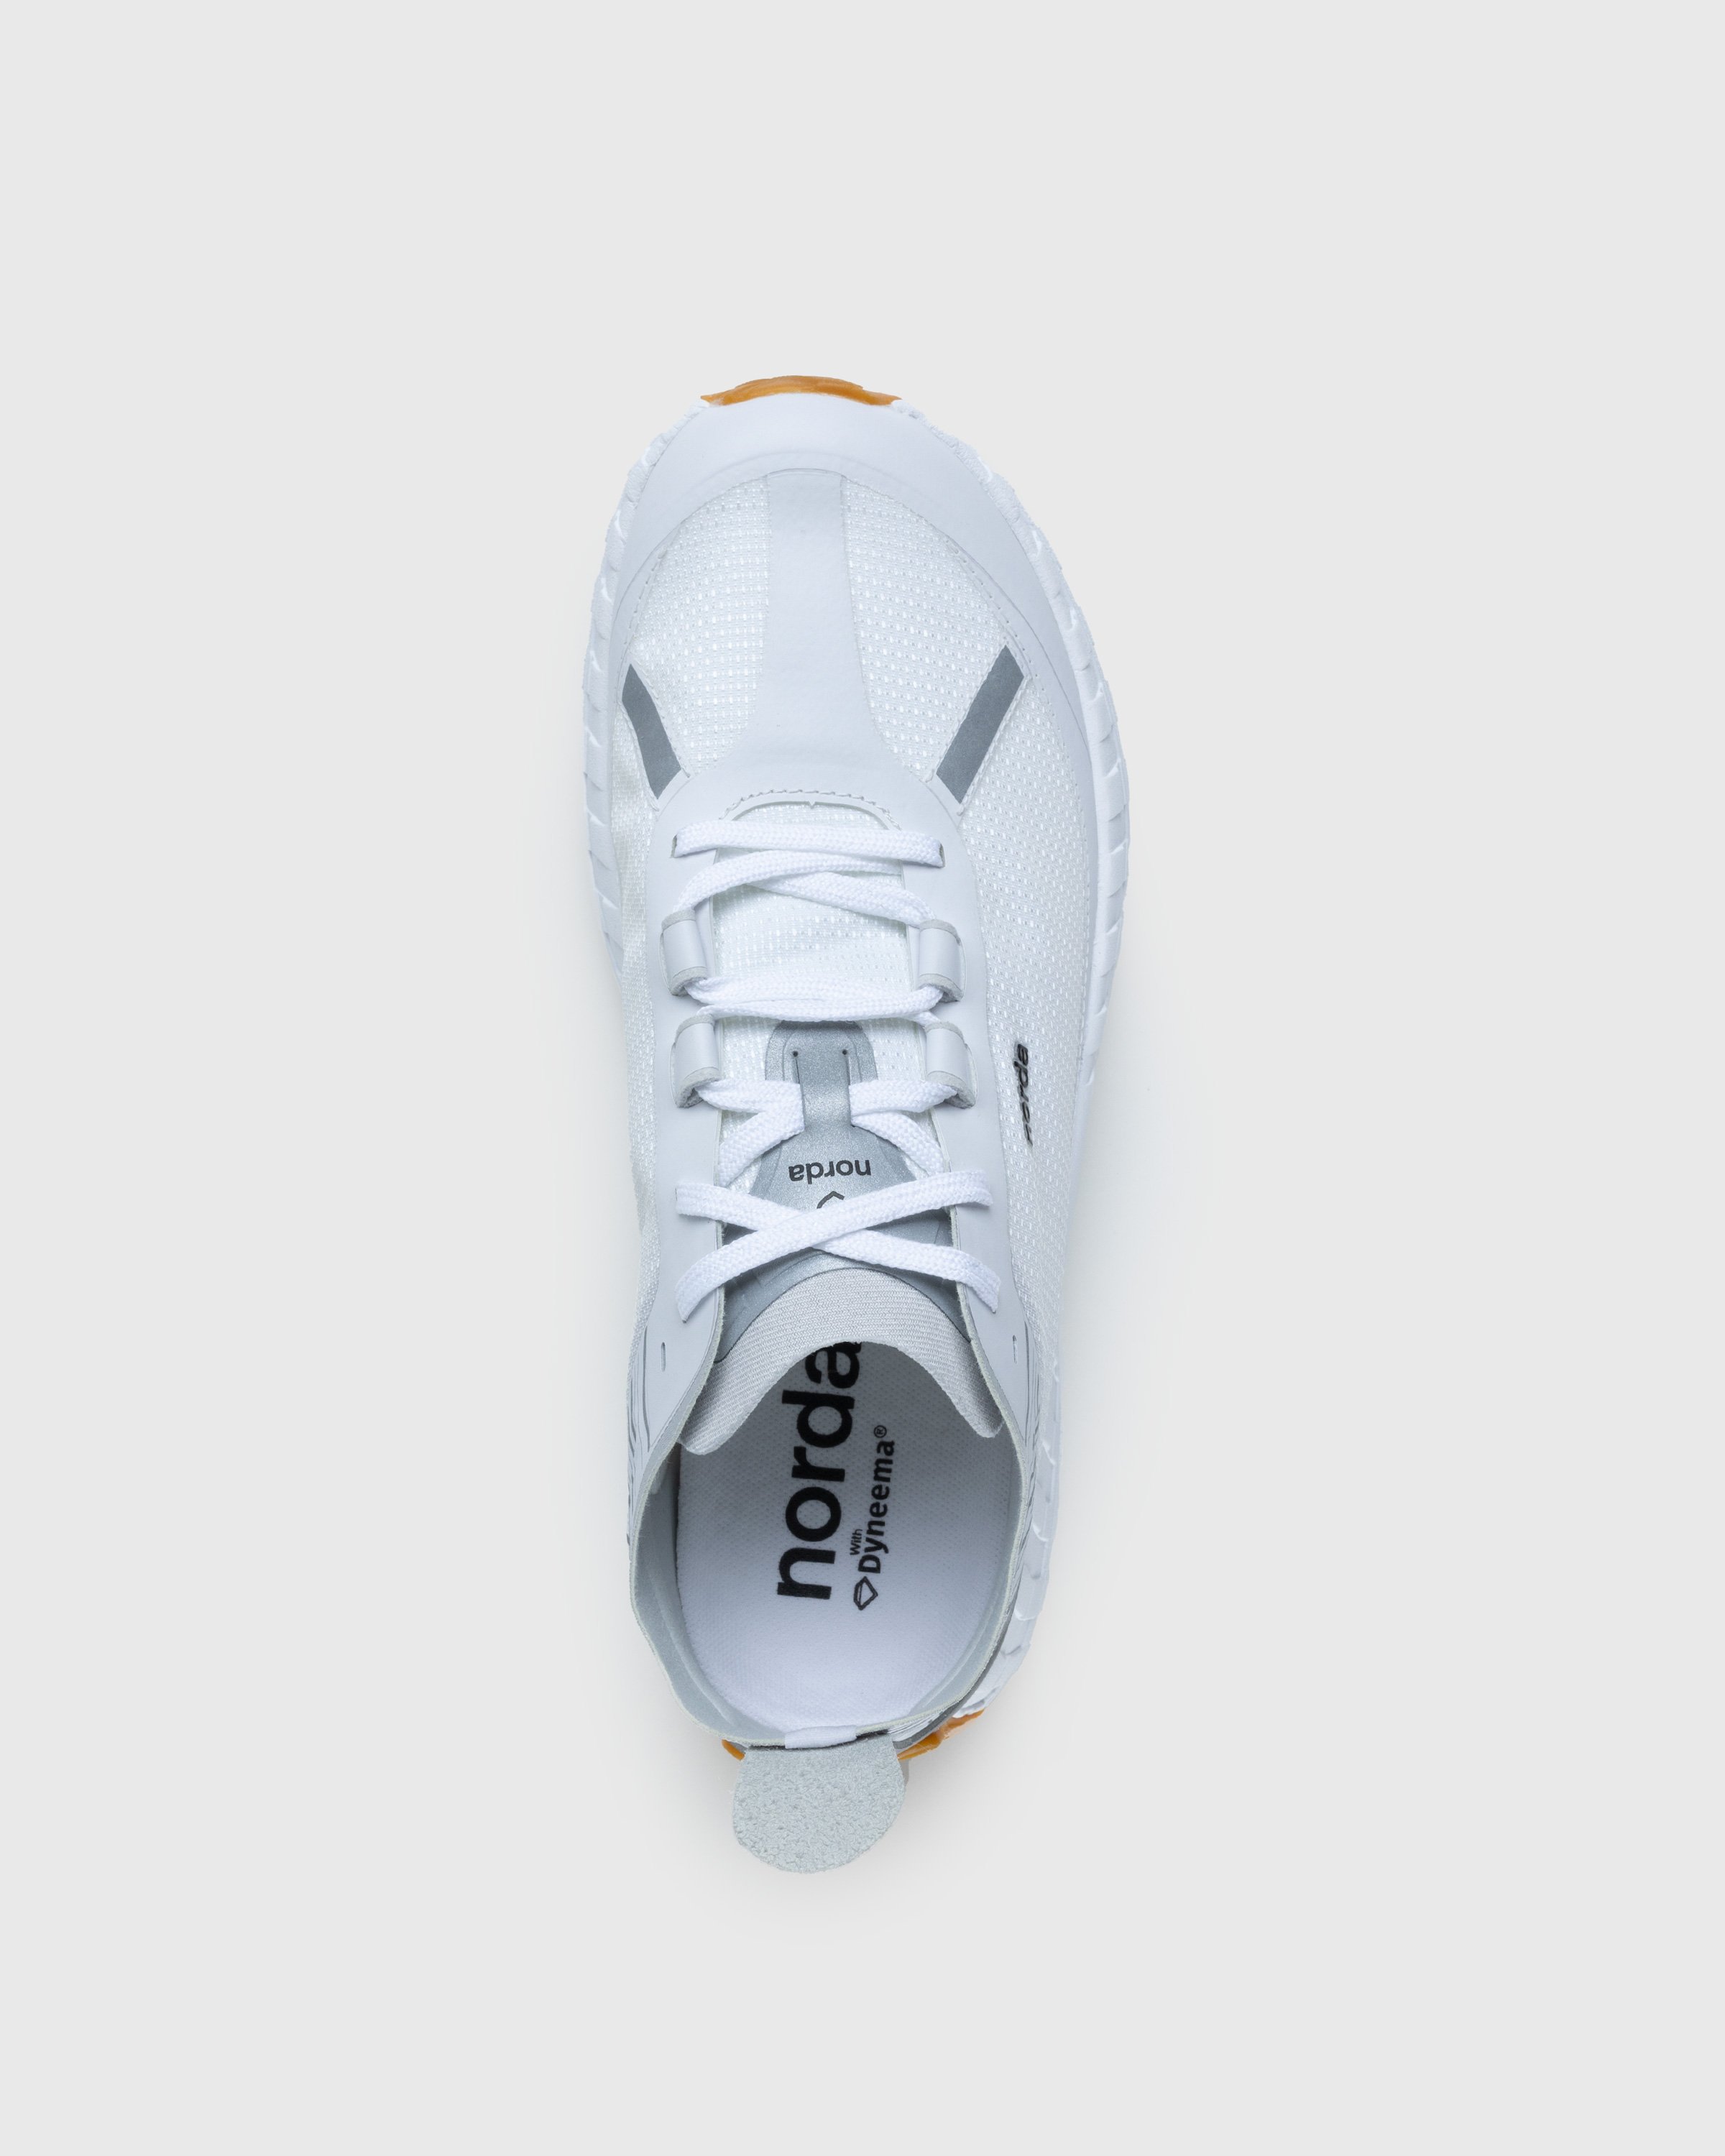 Norda - 001 M White/Gum - Footwear - White - Image 5